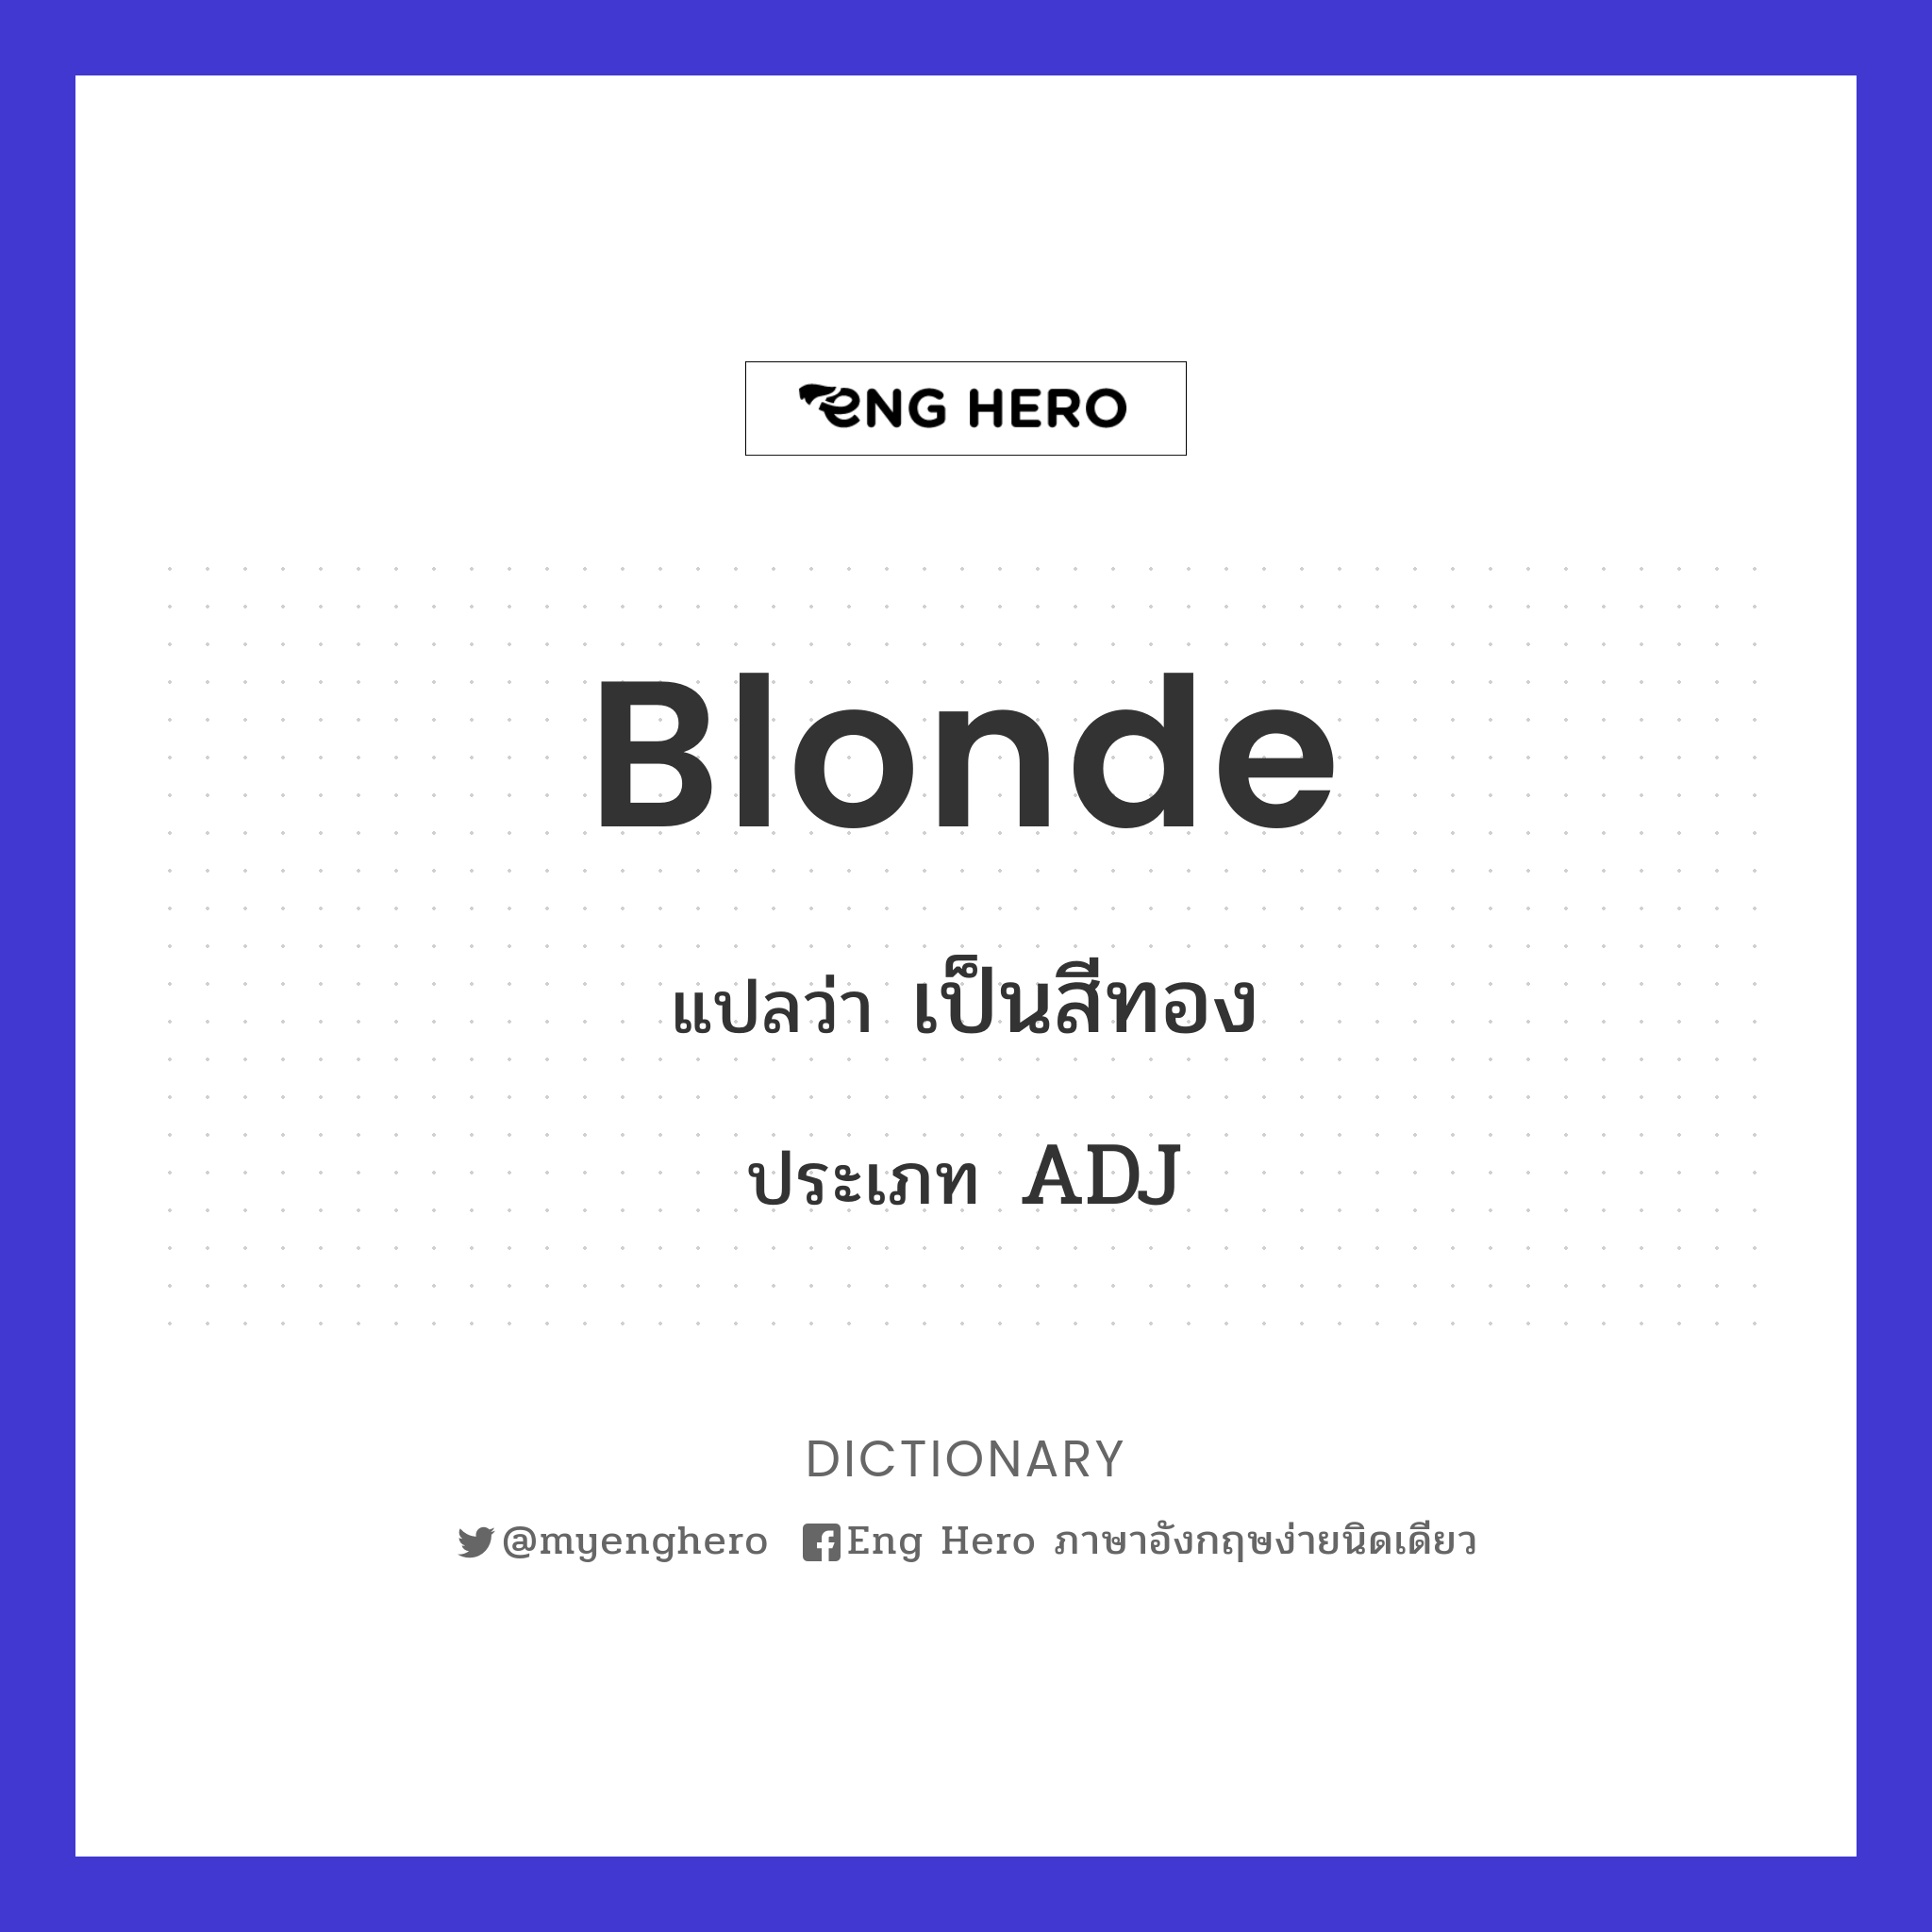 Blonde แปลว่า เป็นสีทอง | Eng Hero เรียนภาษาอังกฤษ ออนไลน์ ฟรี